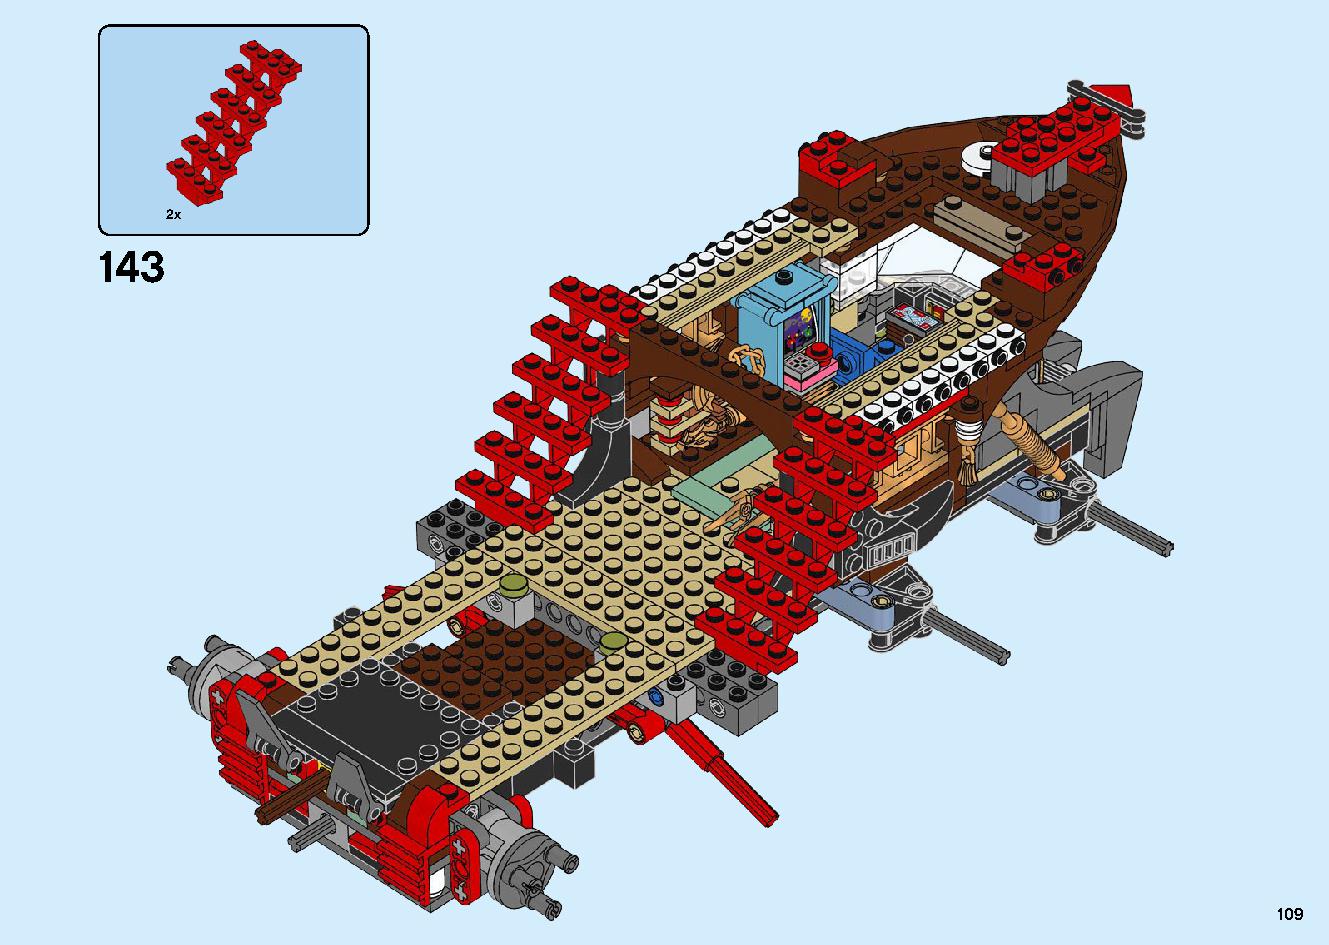 陸上戦艦バウンティ号 70677 レゴの商品情報 レゴの説明書・組立方法 109 page